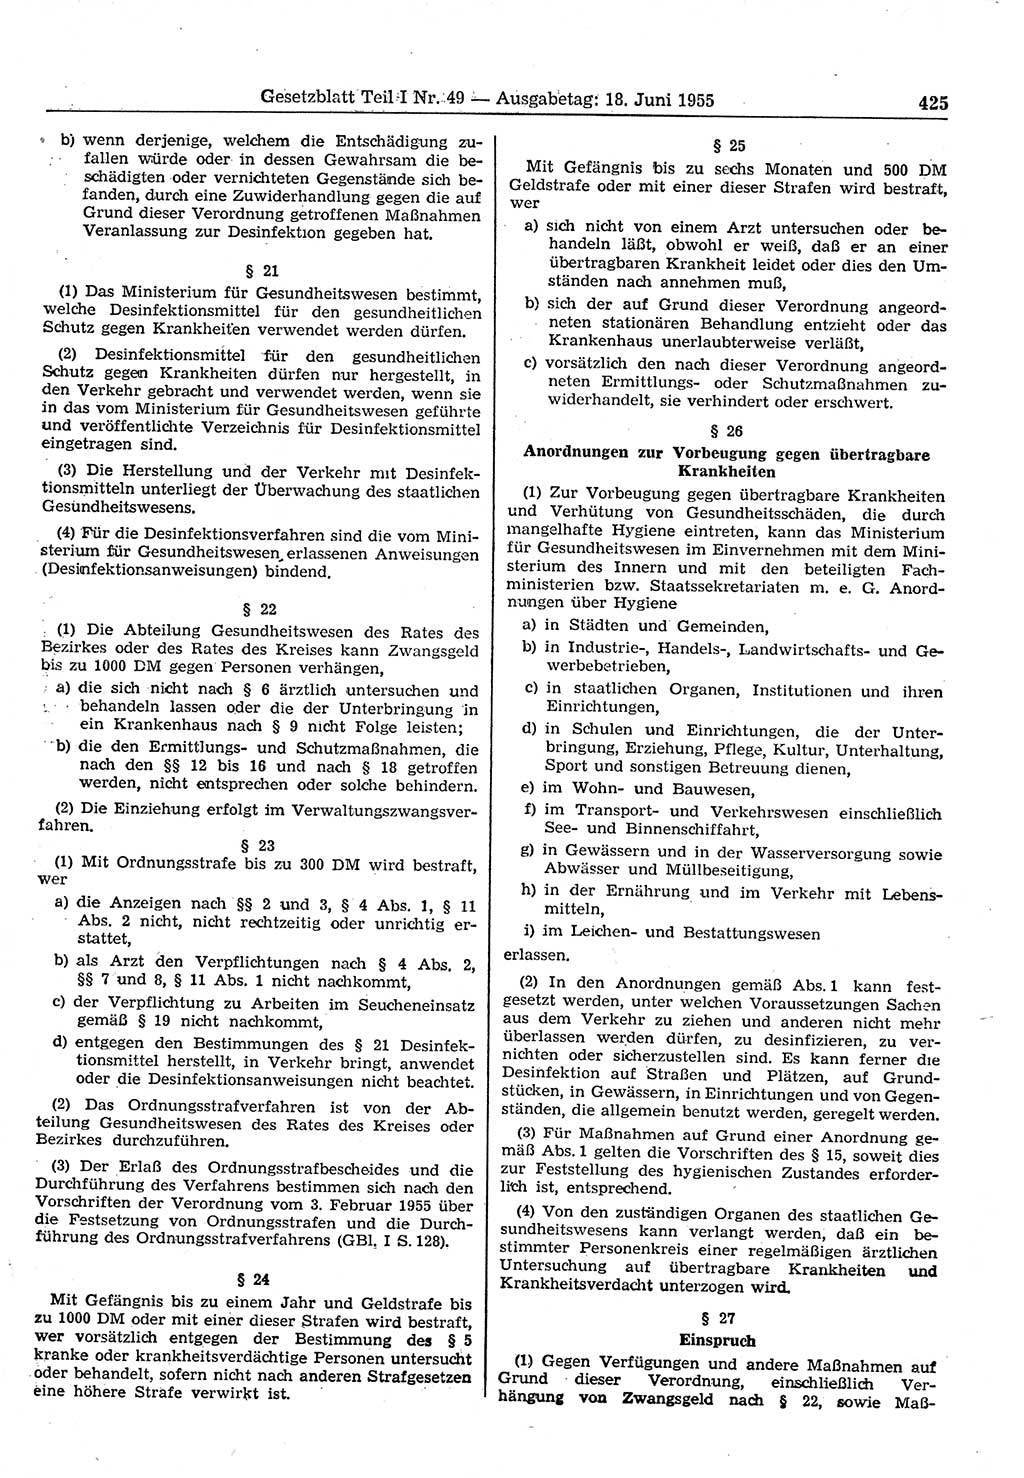 Gesetzblatt (GBl.) der Deutschen Demokratischen Republik (DDR) Teil Ⅰ 1955, Seite 425 (GBl. DDR Ⅰ 1955, S. 425)